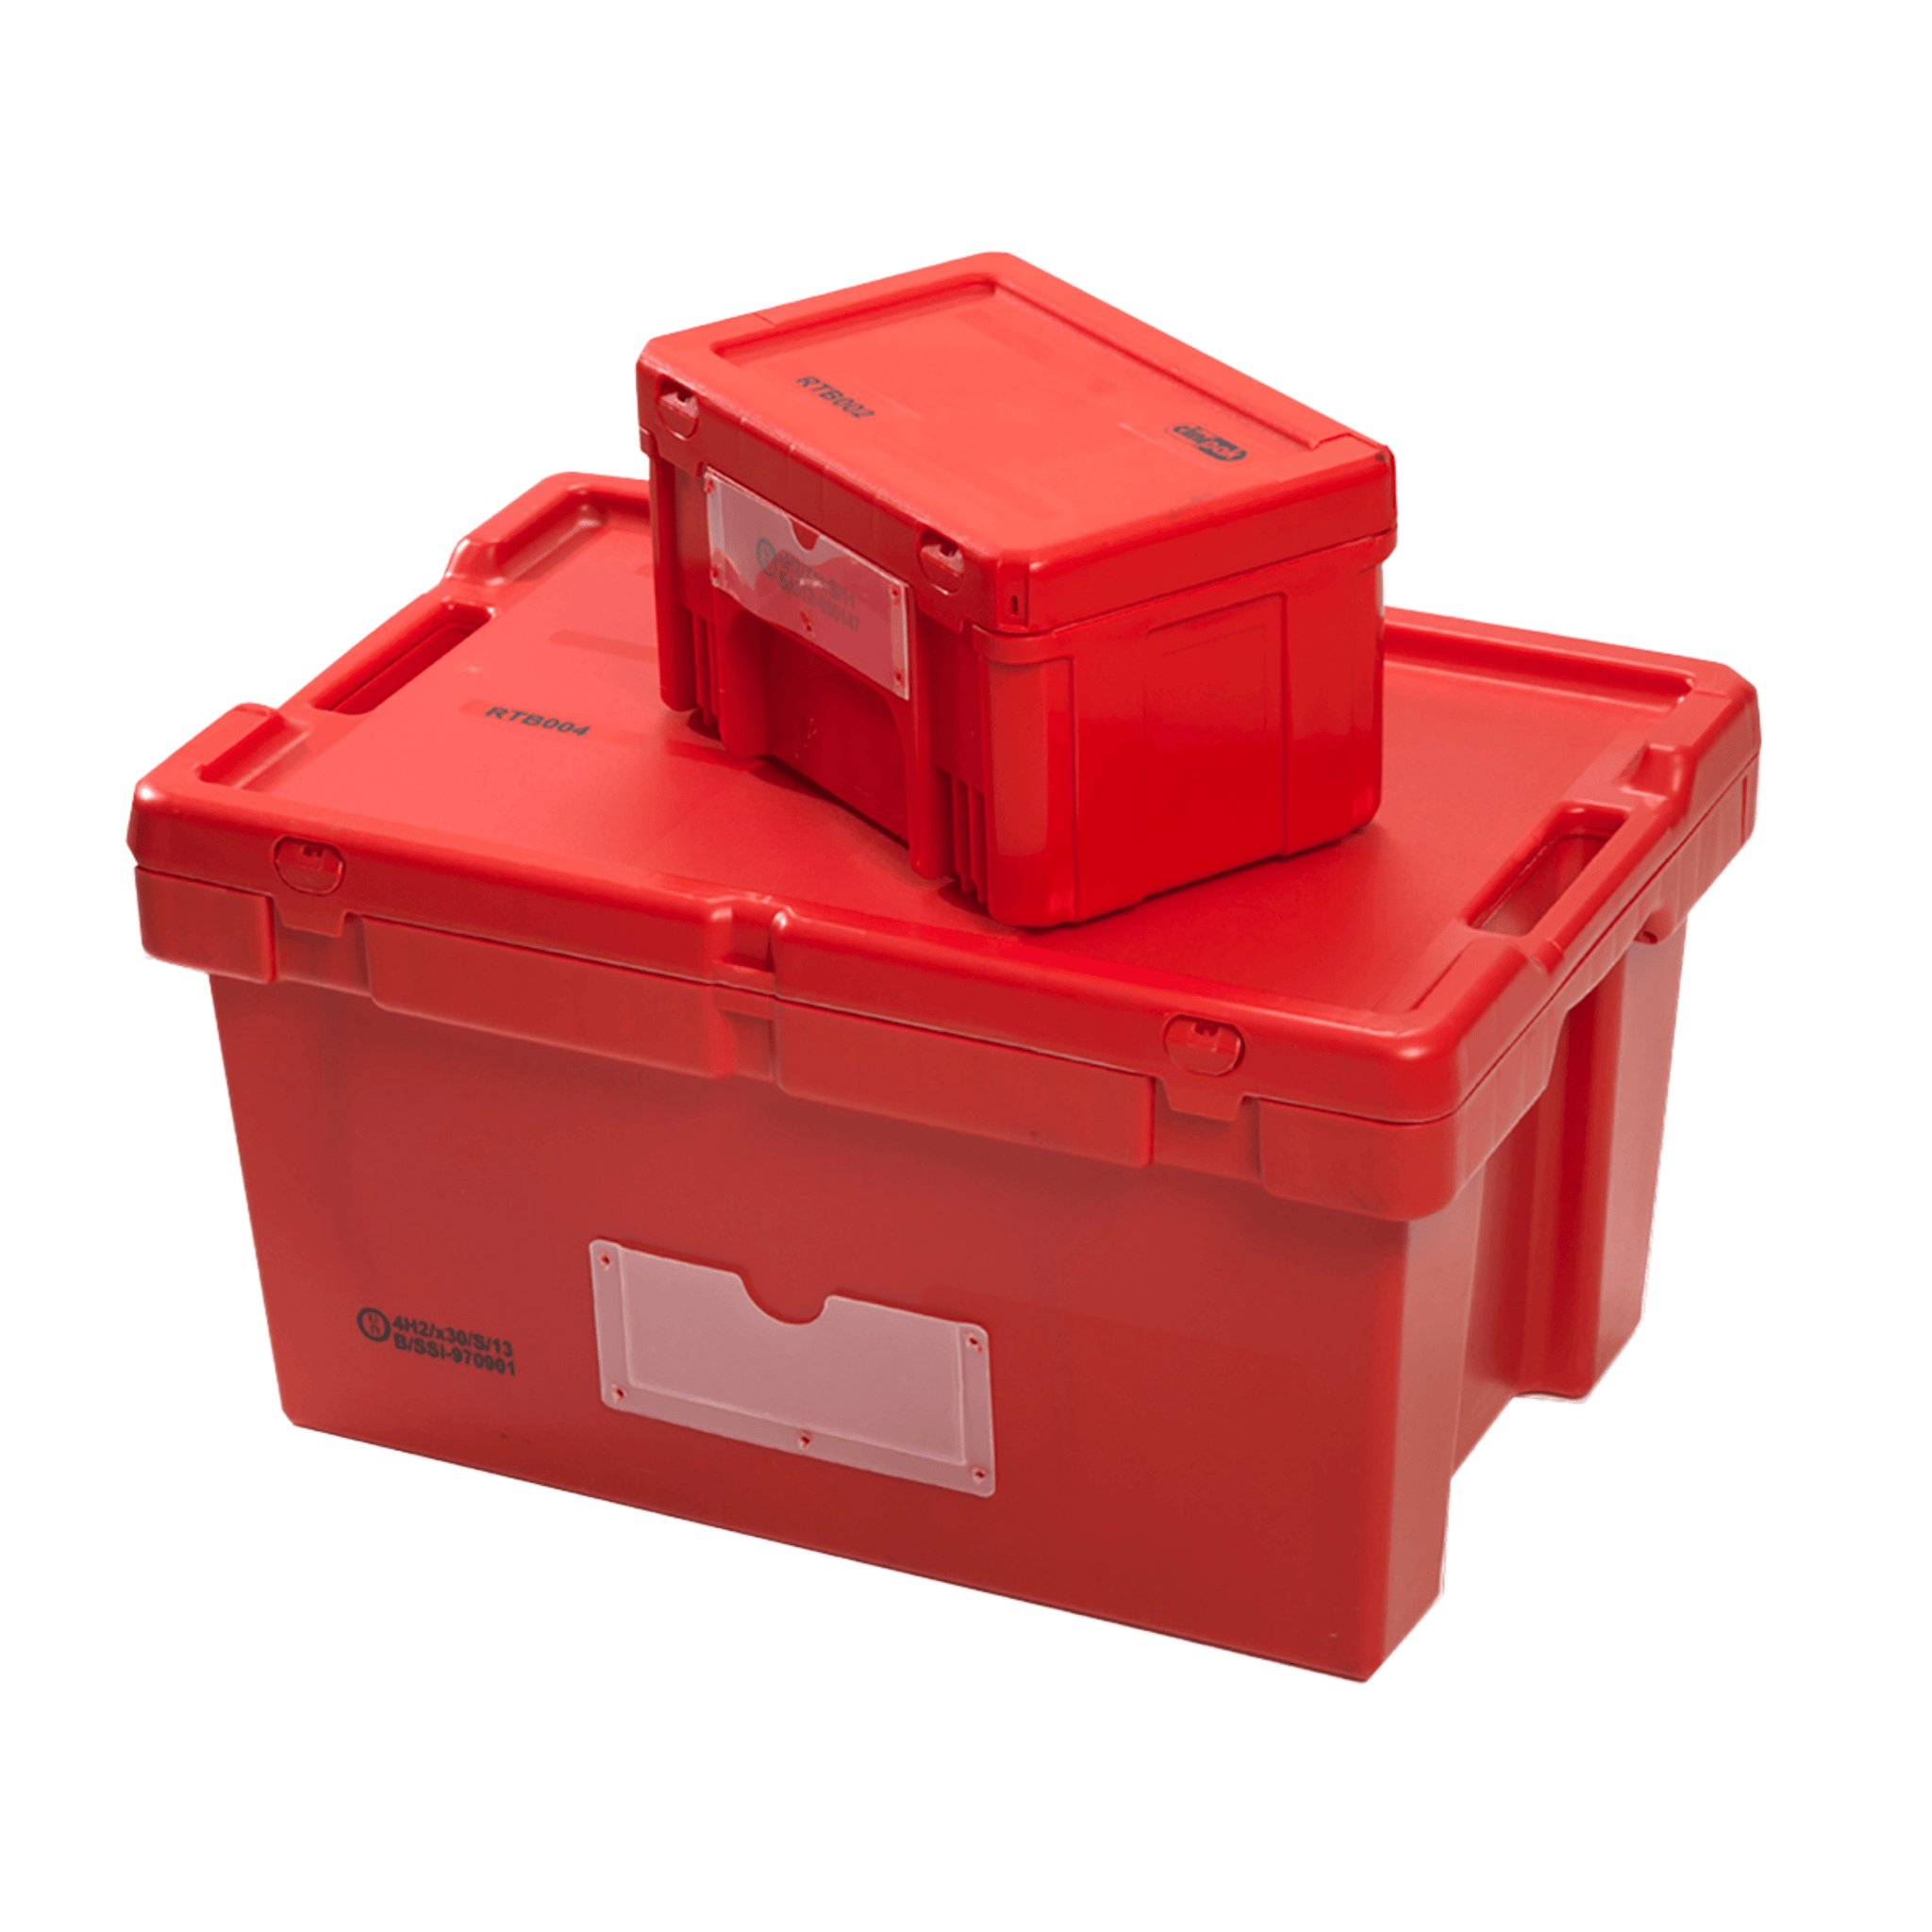 Transport Box - Red, 1.4 kg, 400 X 300 X 220 mm